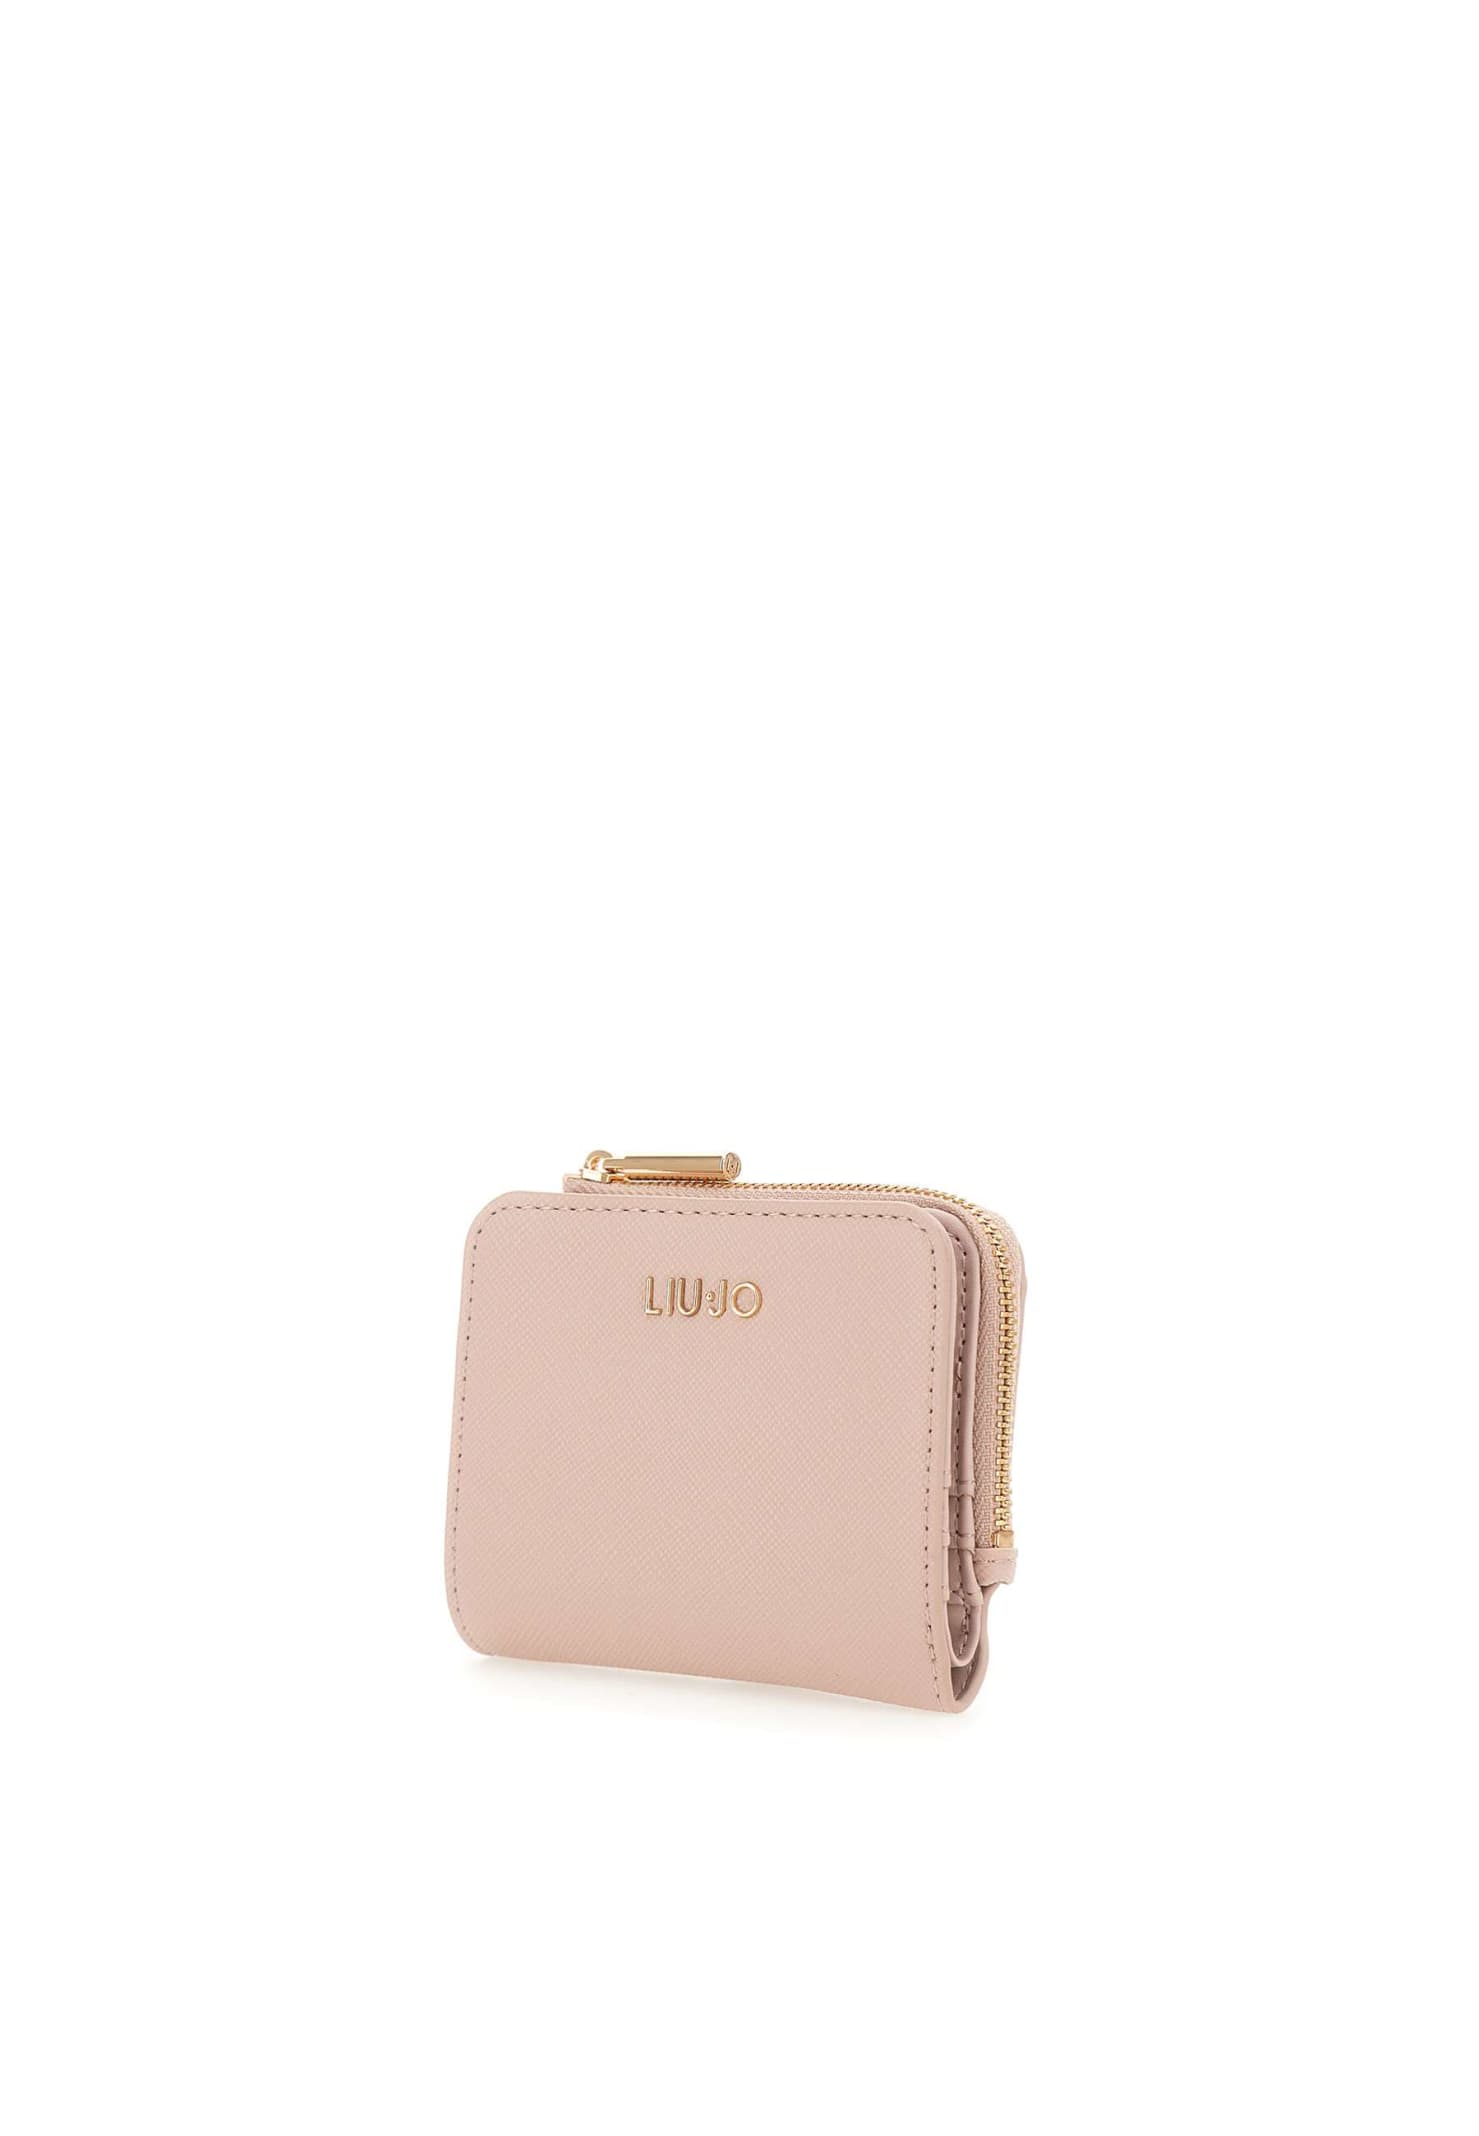 Shop Liu •jo Wallet Caliwen Liu-jo In Pink